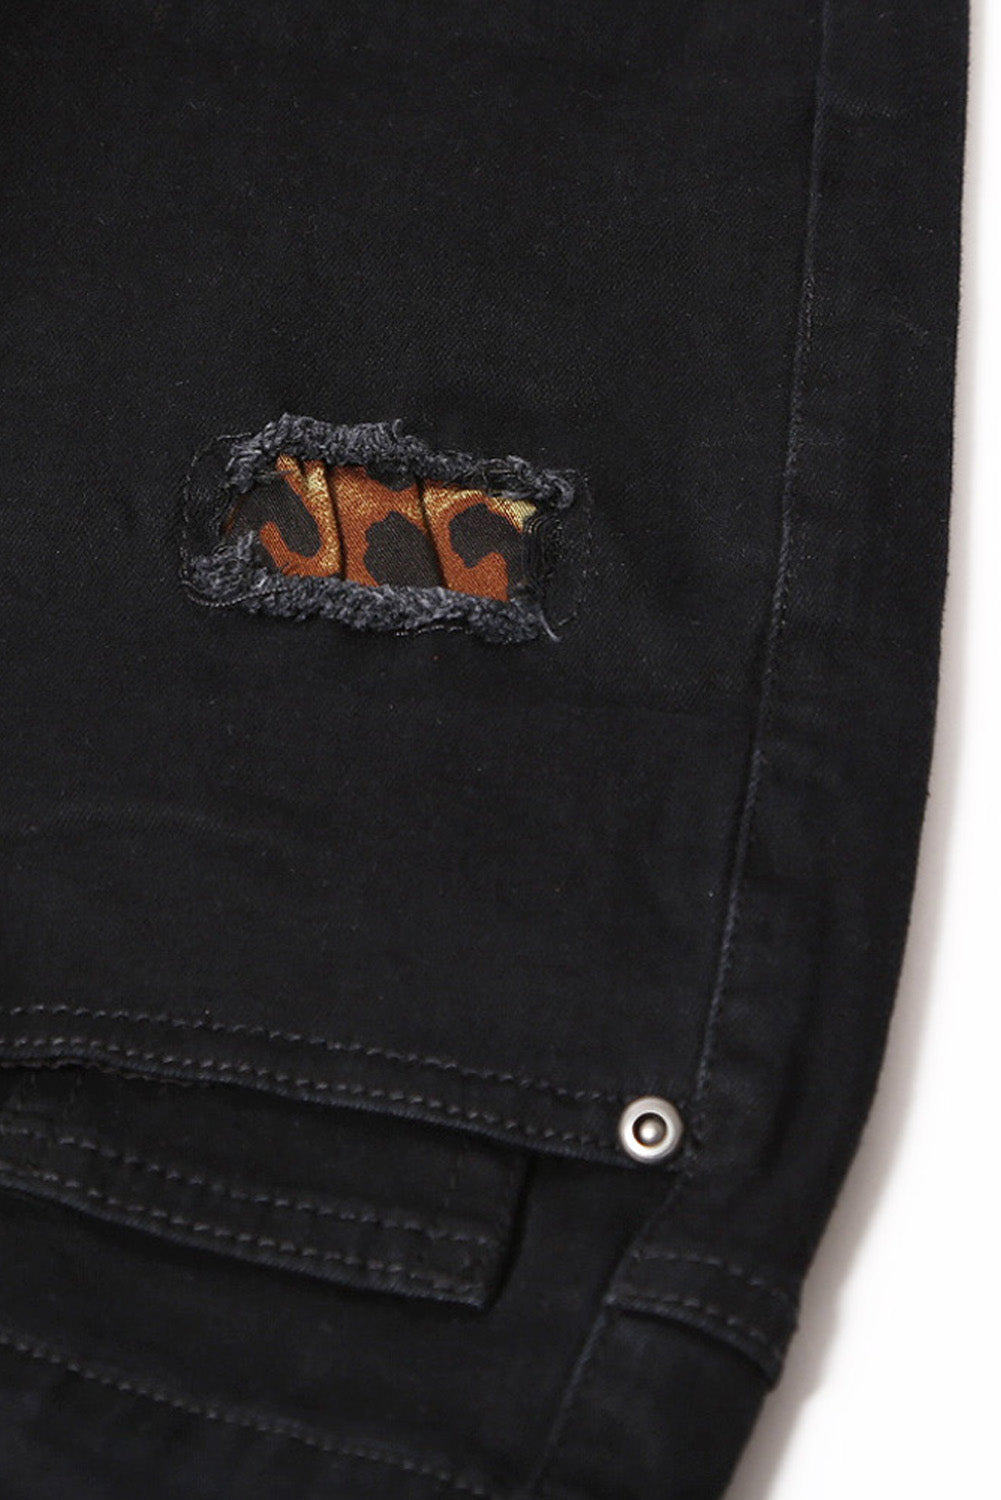 Leopard Patch Detail Black Distressed Jeans Jeans JT's Designer Fashion